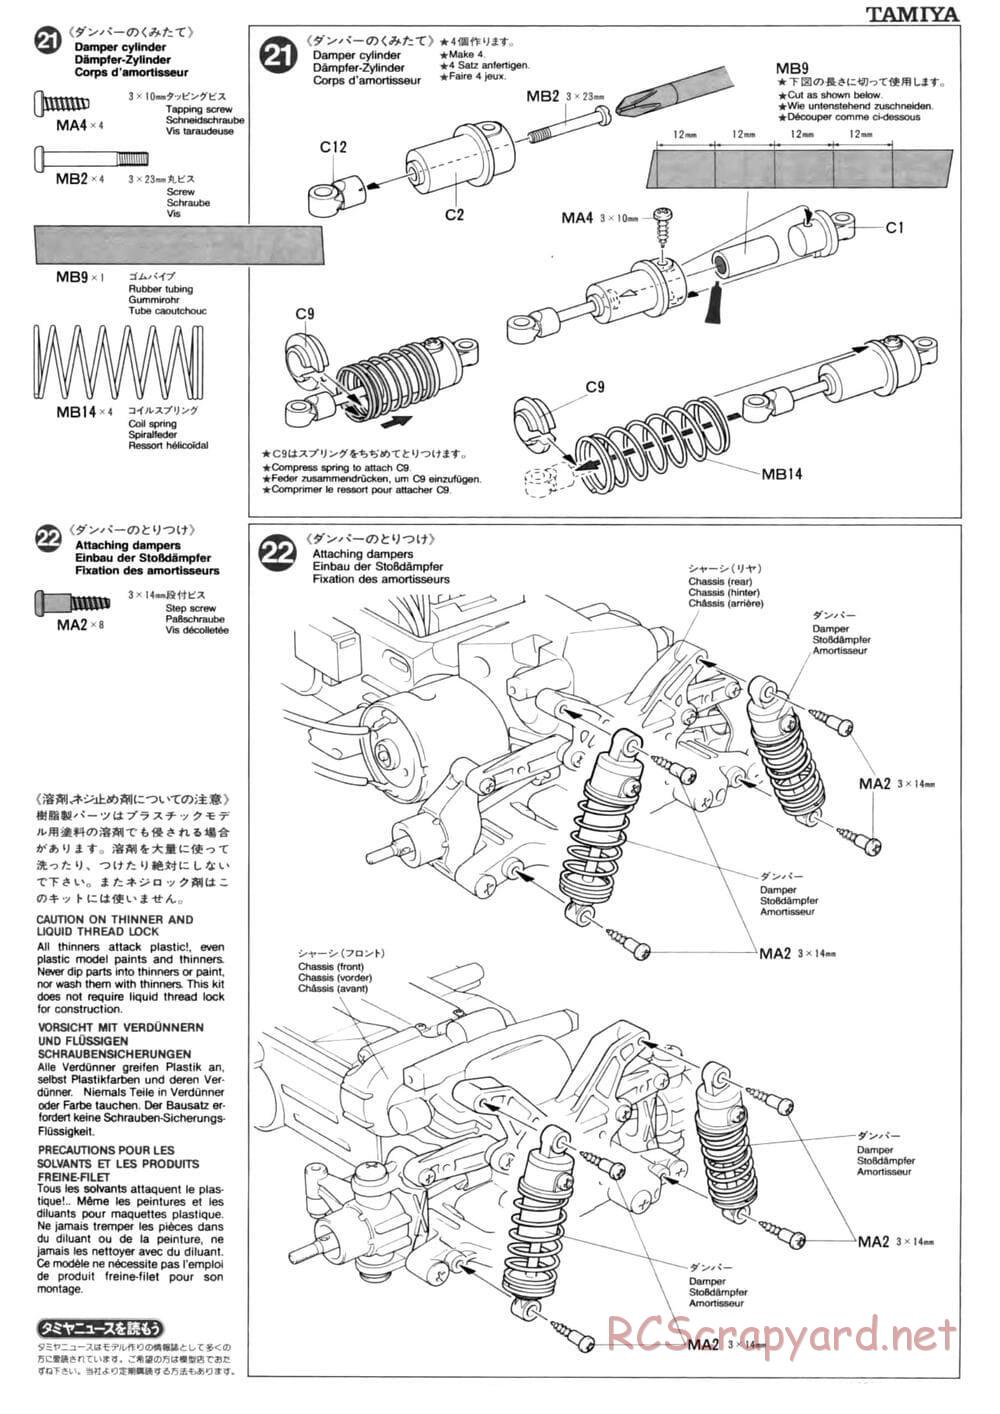 Tamiya - TL-01 Chassis - Manual - Page 13